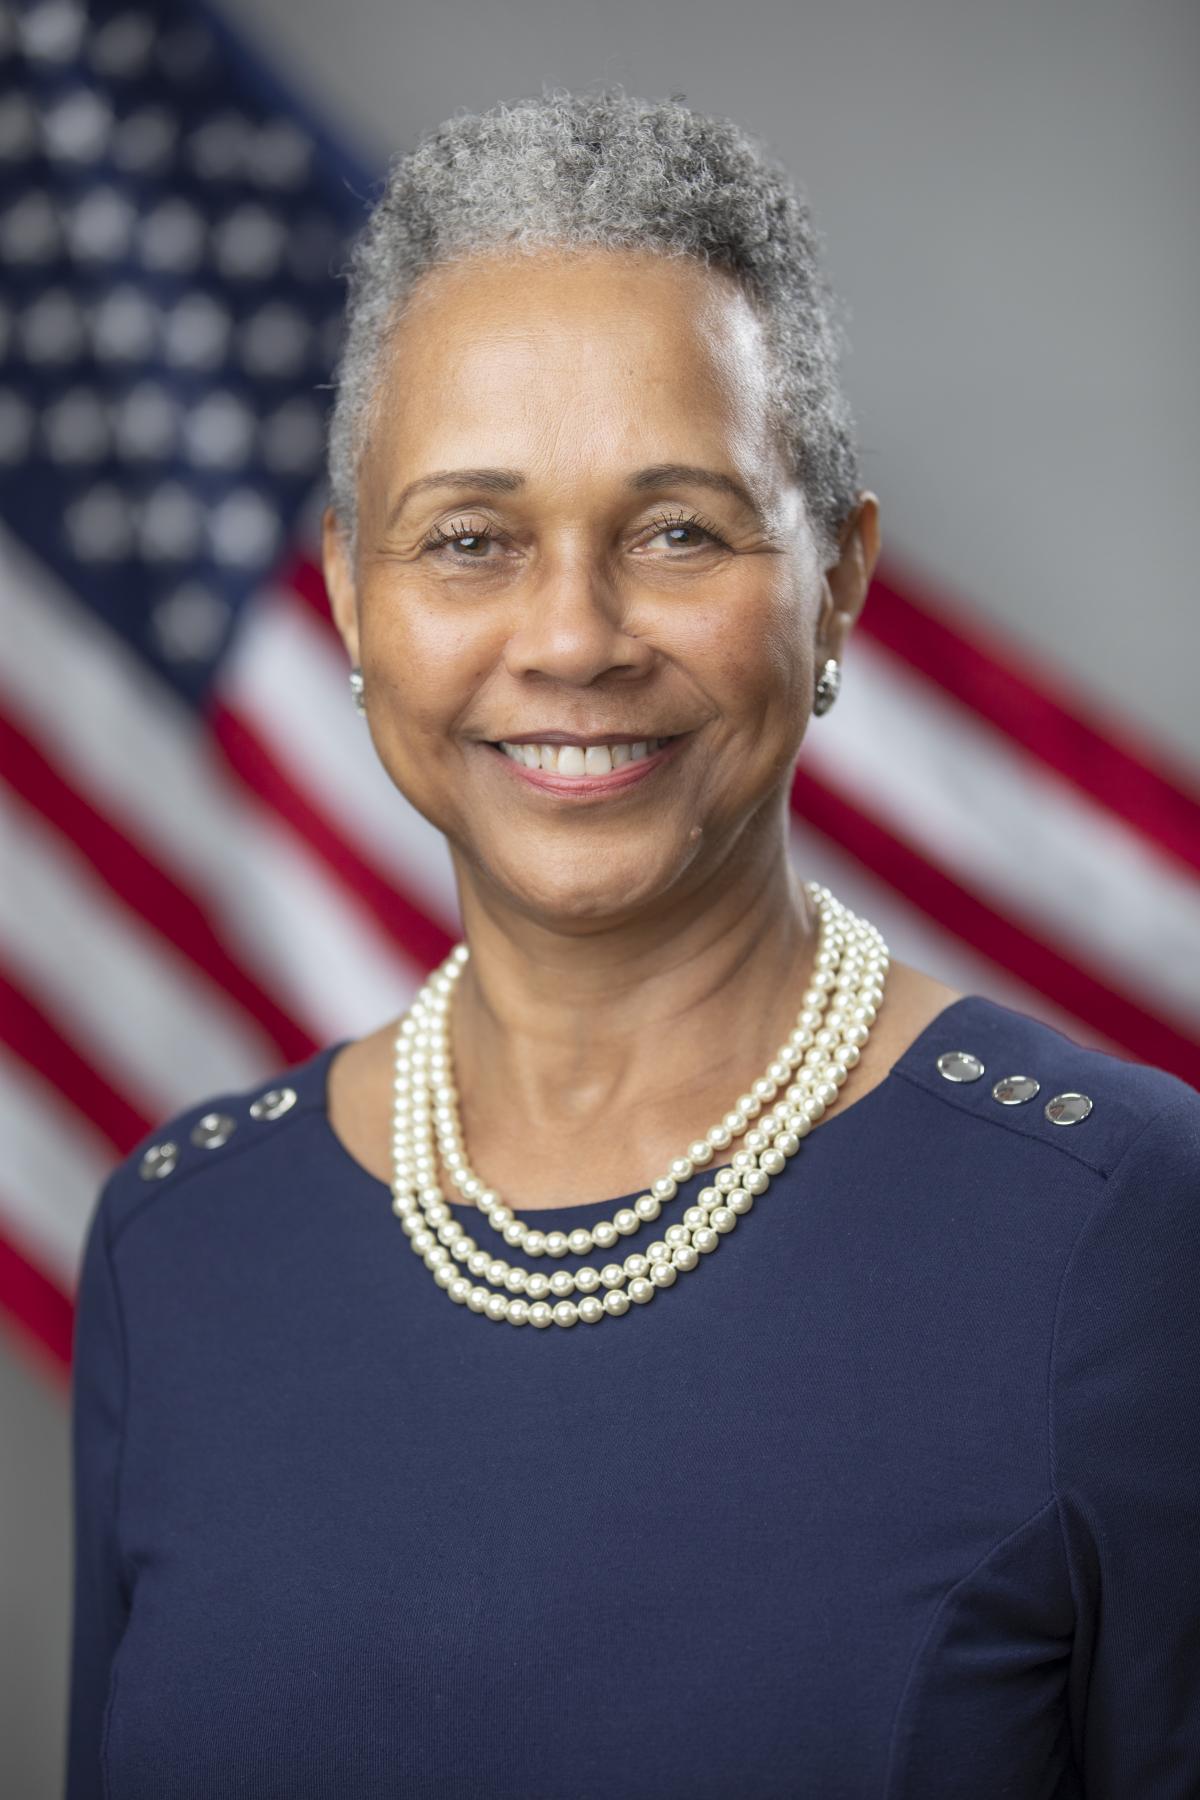 Council Member Linda J. Davis